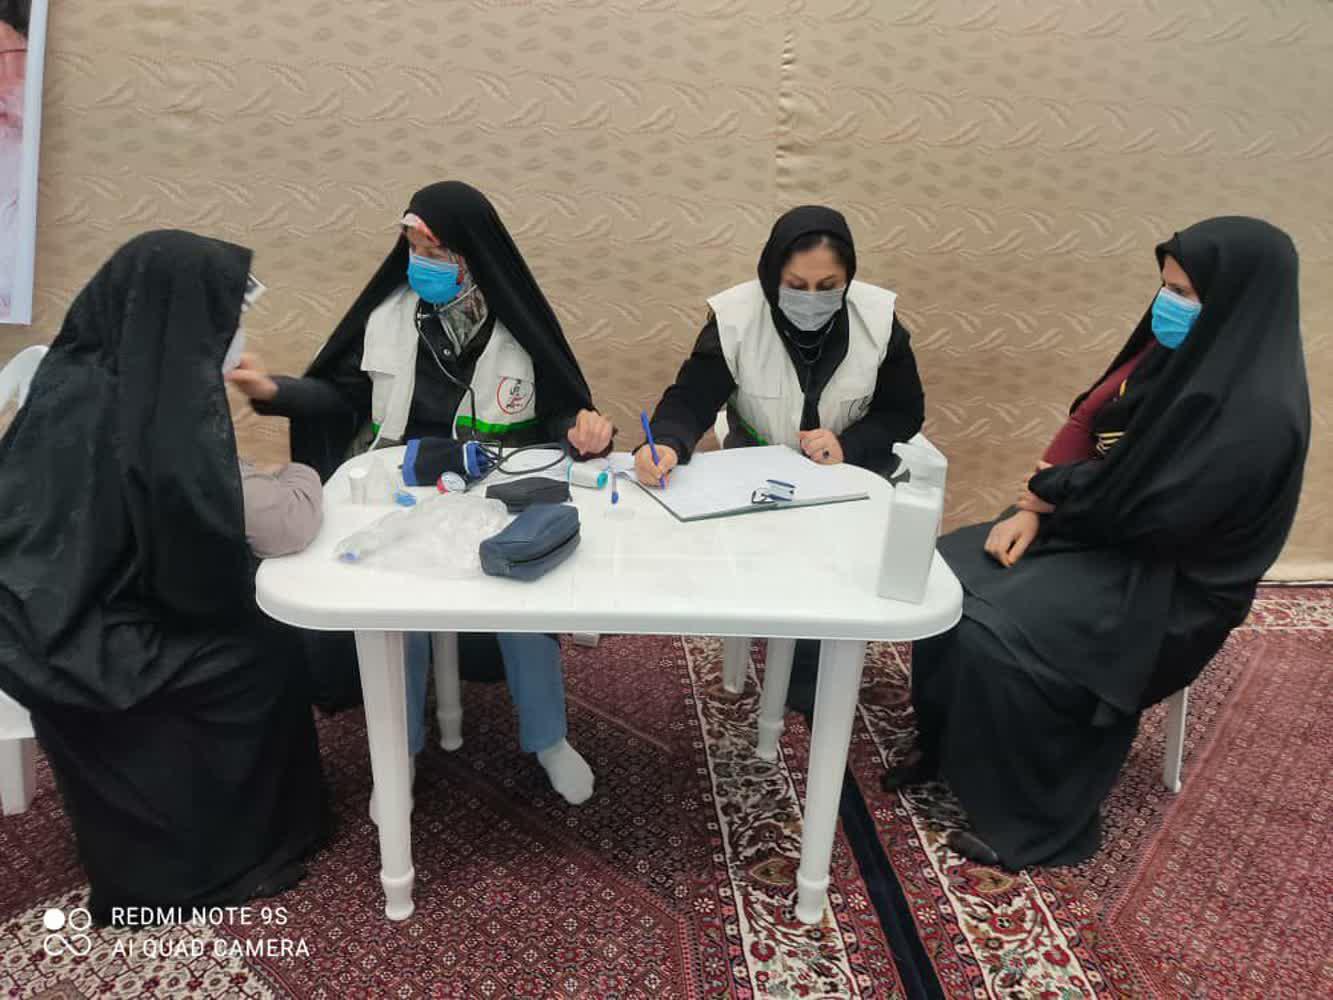 اجرای طرح ویزیت رایگان بسیج جامعه پزشکی در مسجد حضرت موسی بن جعفر(ع)منطقه اسلام آباد زنجان